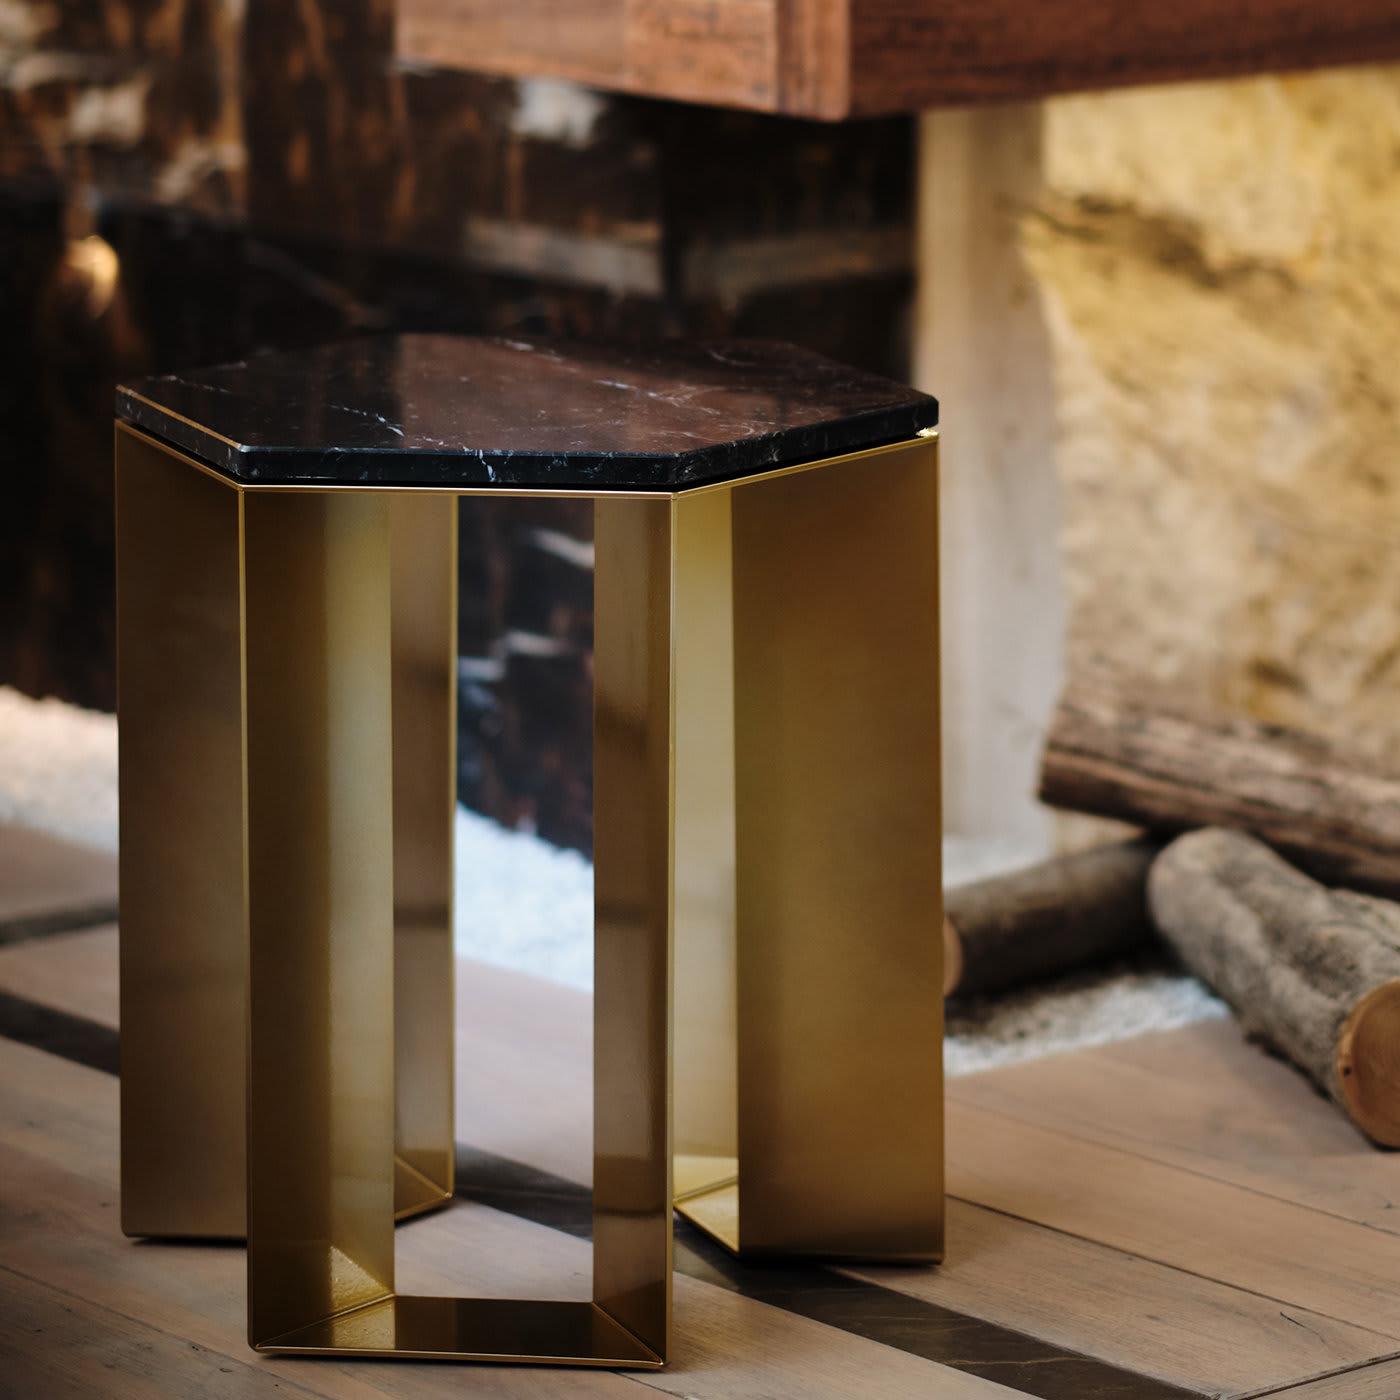 Elegante en su diseño sencillo y equilibrado, esta mesa auxiliar pertenece a una refinada serie creada por el artista Antonio Saporito para interiores contemporáneos. Limpia y esencial, presenta una base de metal lacado en tono dorado compuesta por